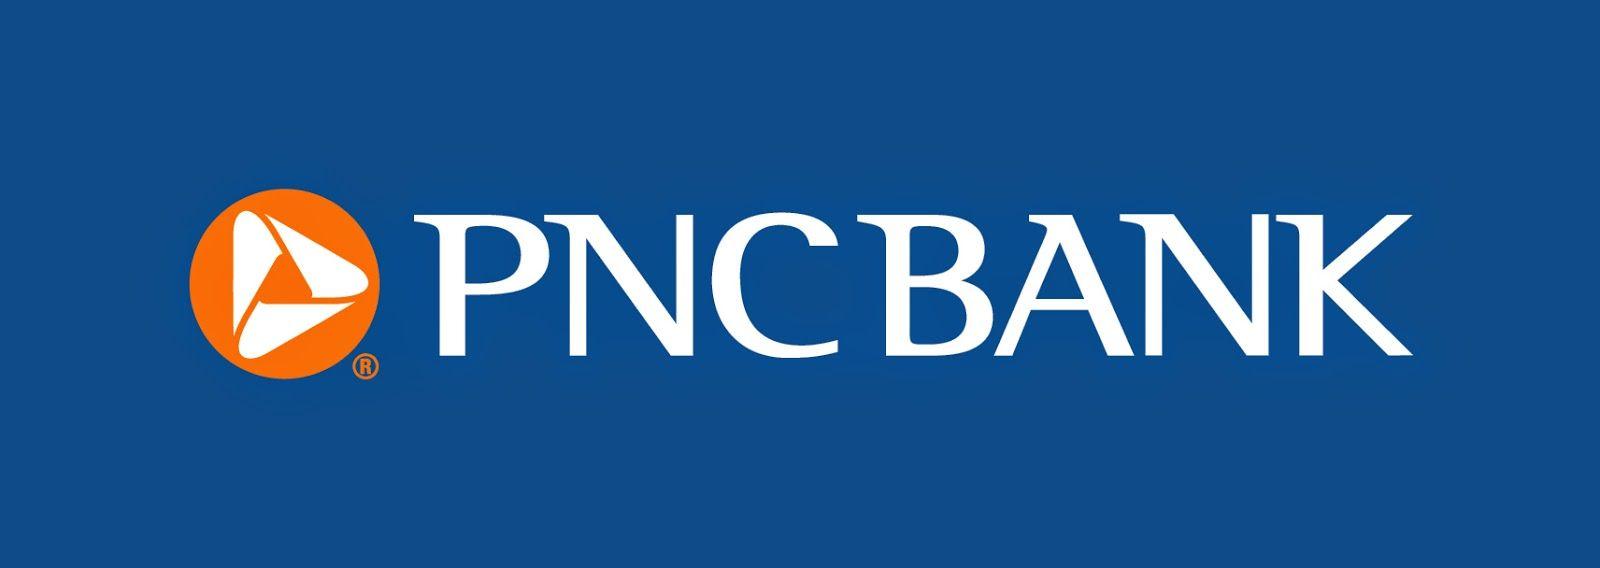 PNC Bank Logo - Pnc bank Logos